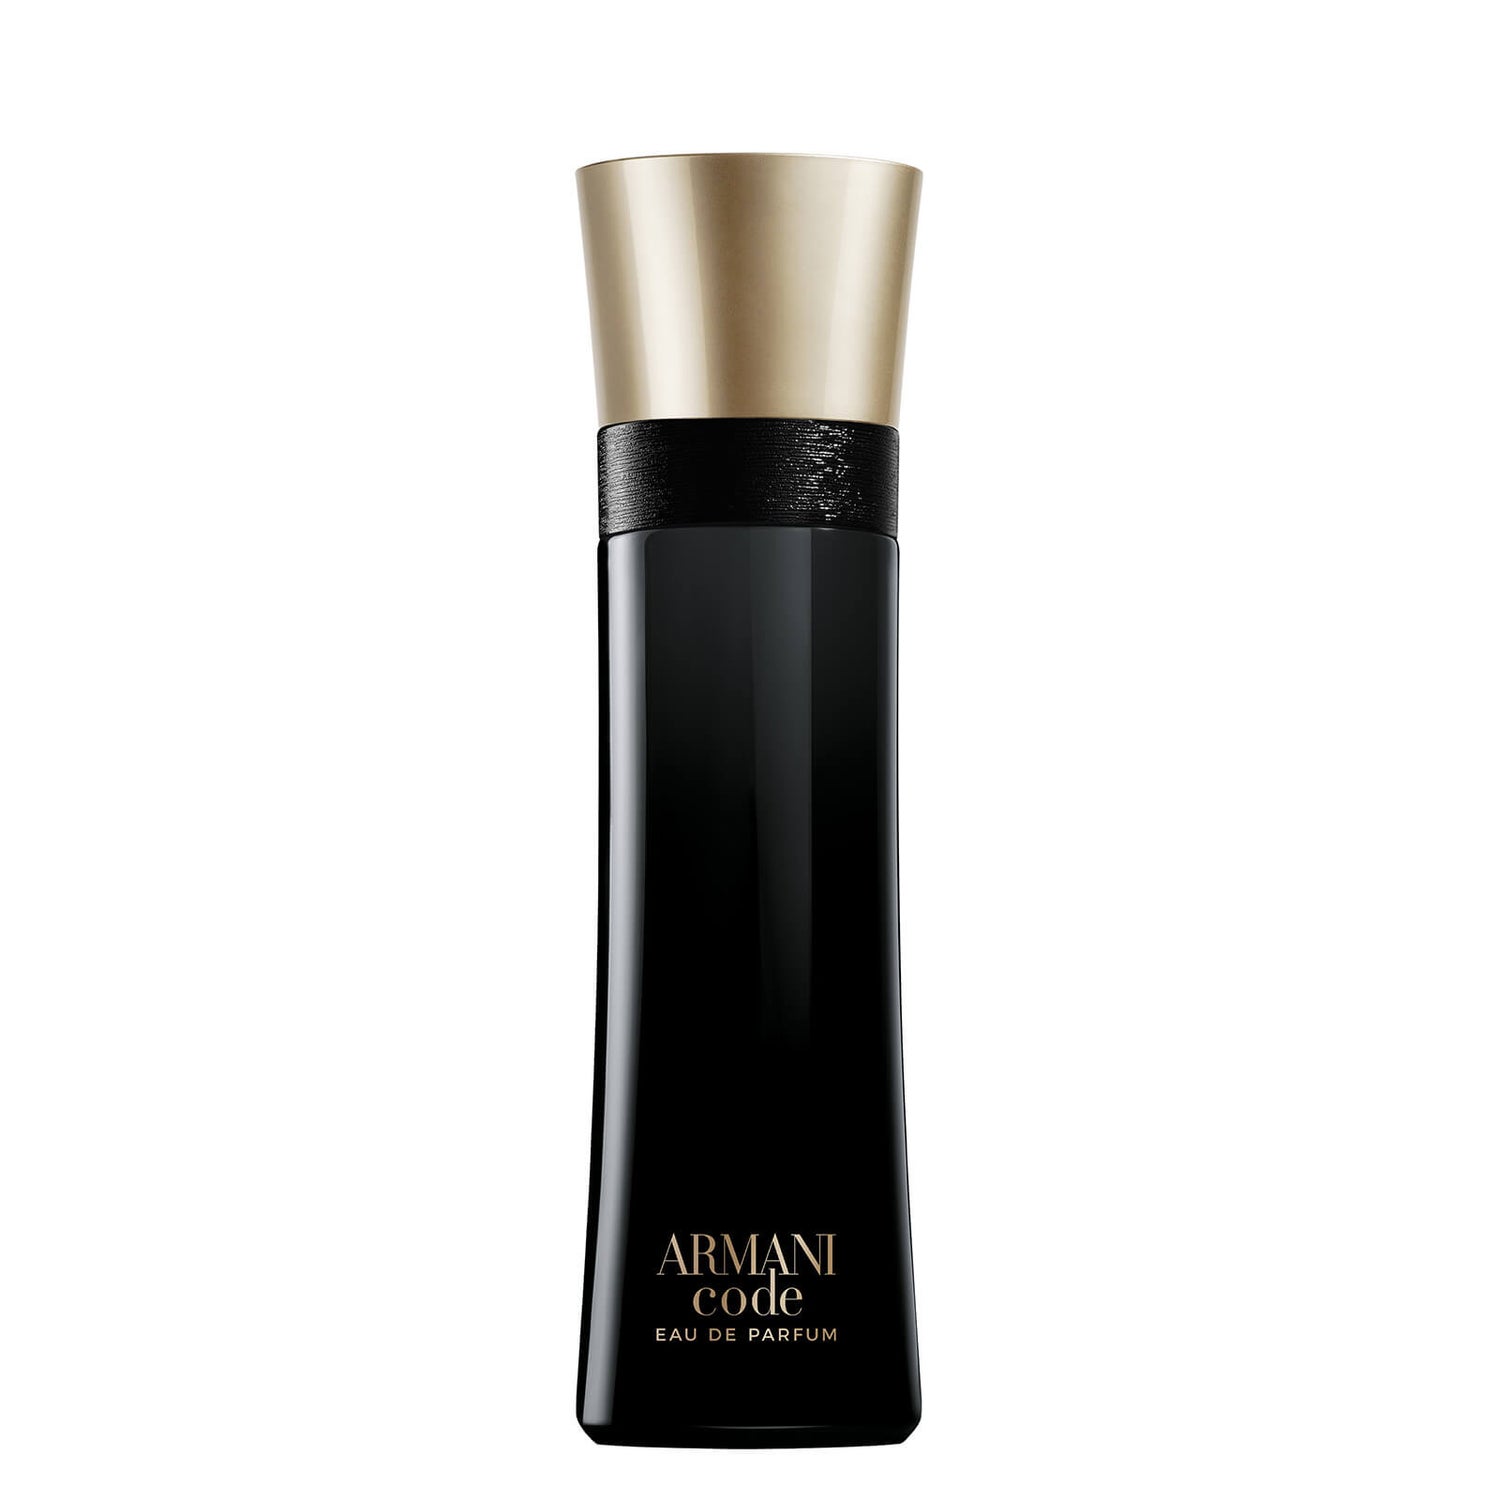 Armani Code Eau de Parfum woda perfumowana – 110 ml